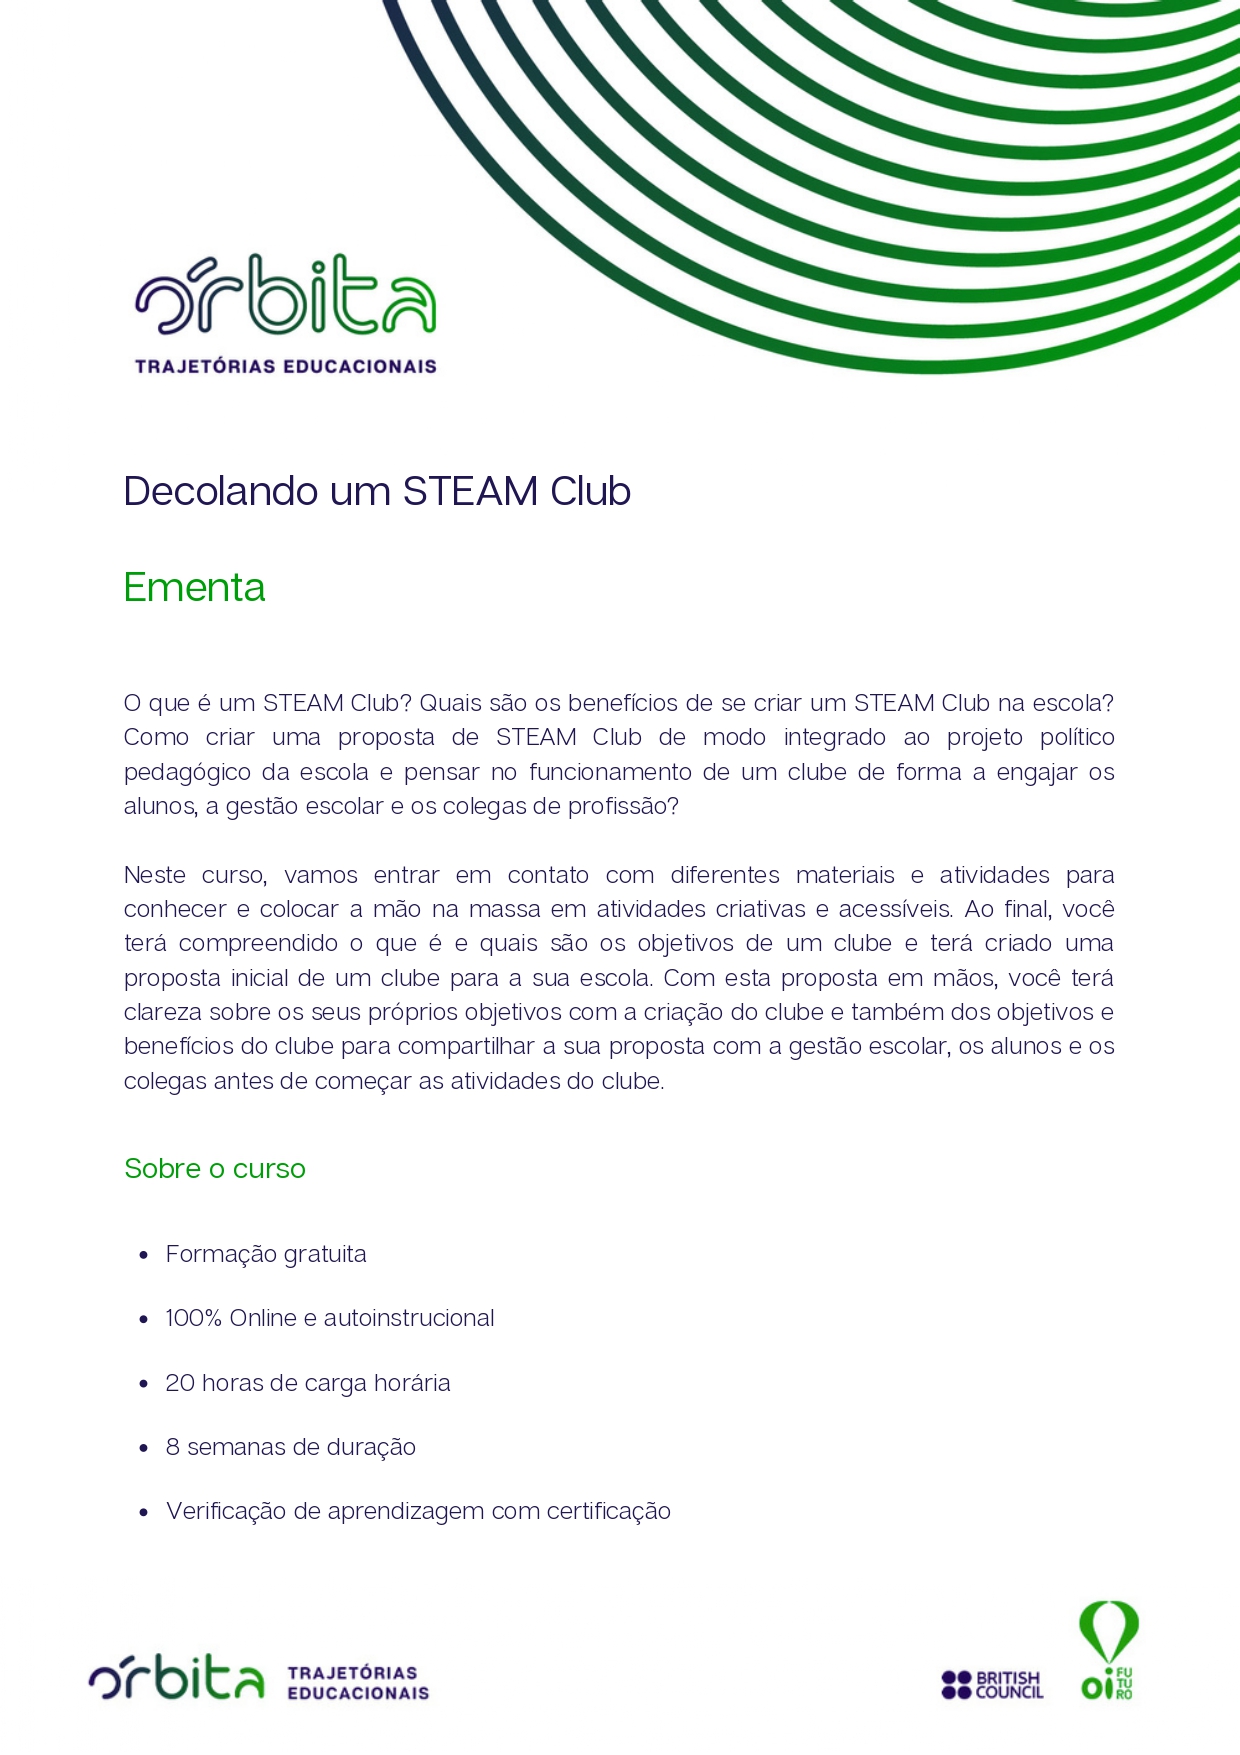 Ementa_Decolando_um_STEAM_Club_PDF_page-0001.jpg